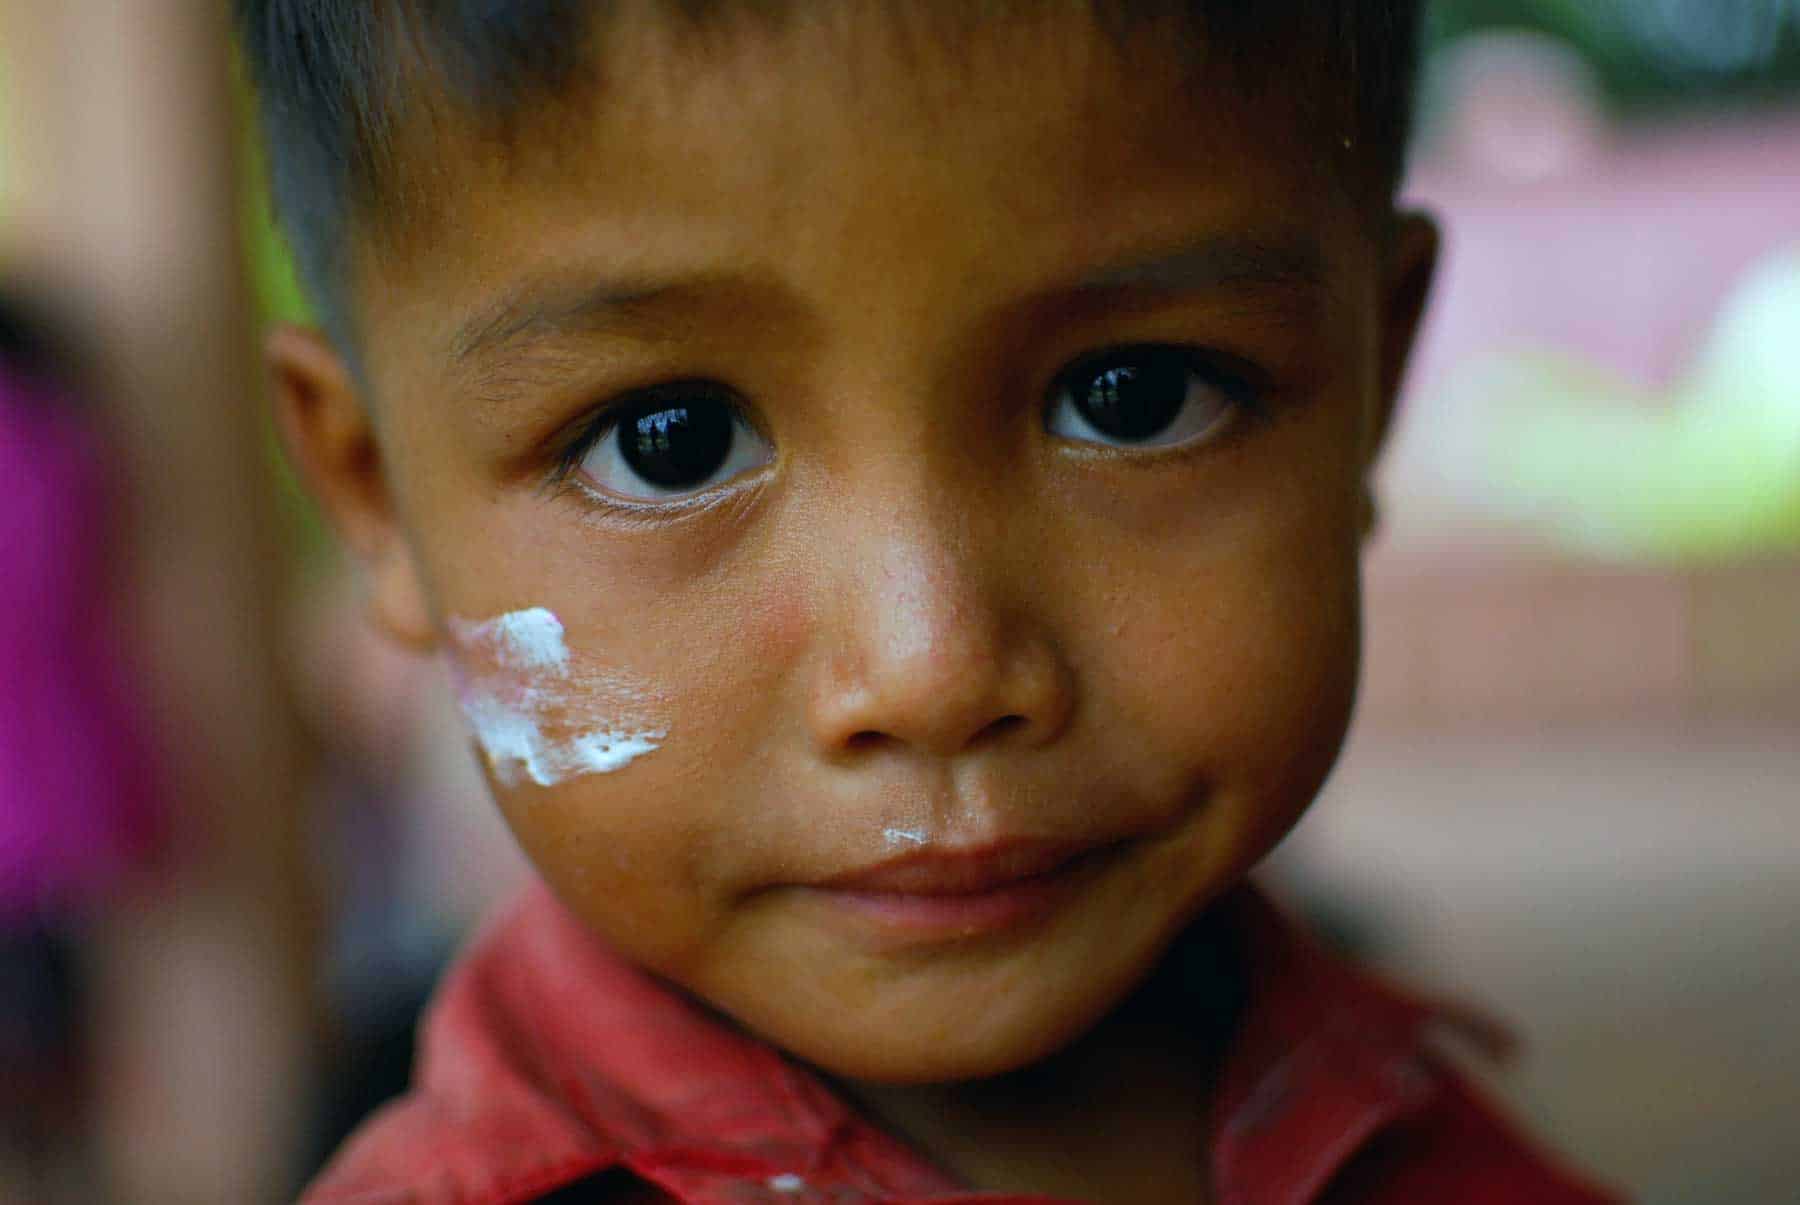 Hübscher kambodschanischer Junge, der missbraucht wurde und im Waisenhaus der NGO AVEC in Battambang, Kambodscha, lebt.